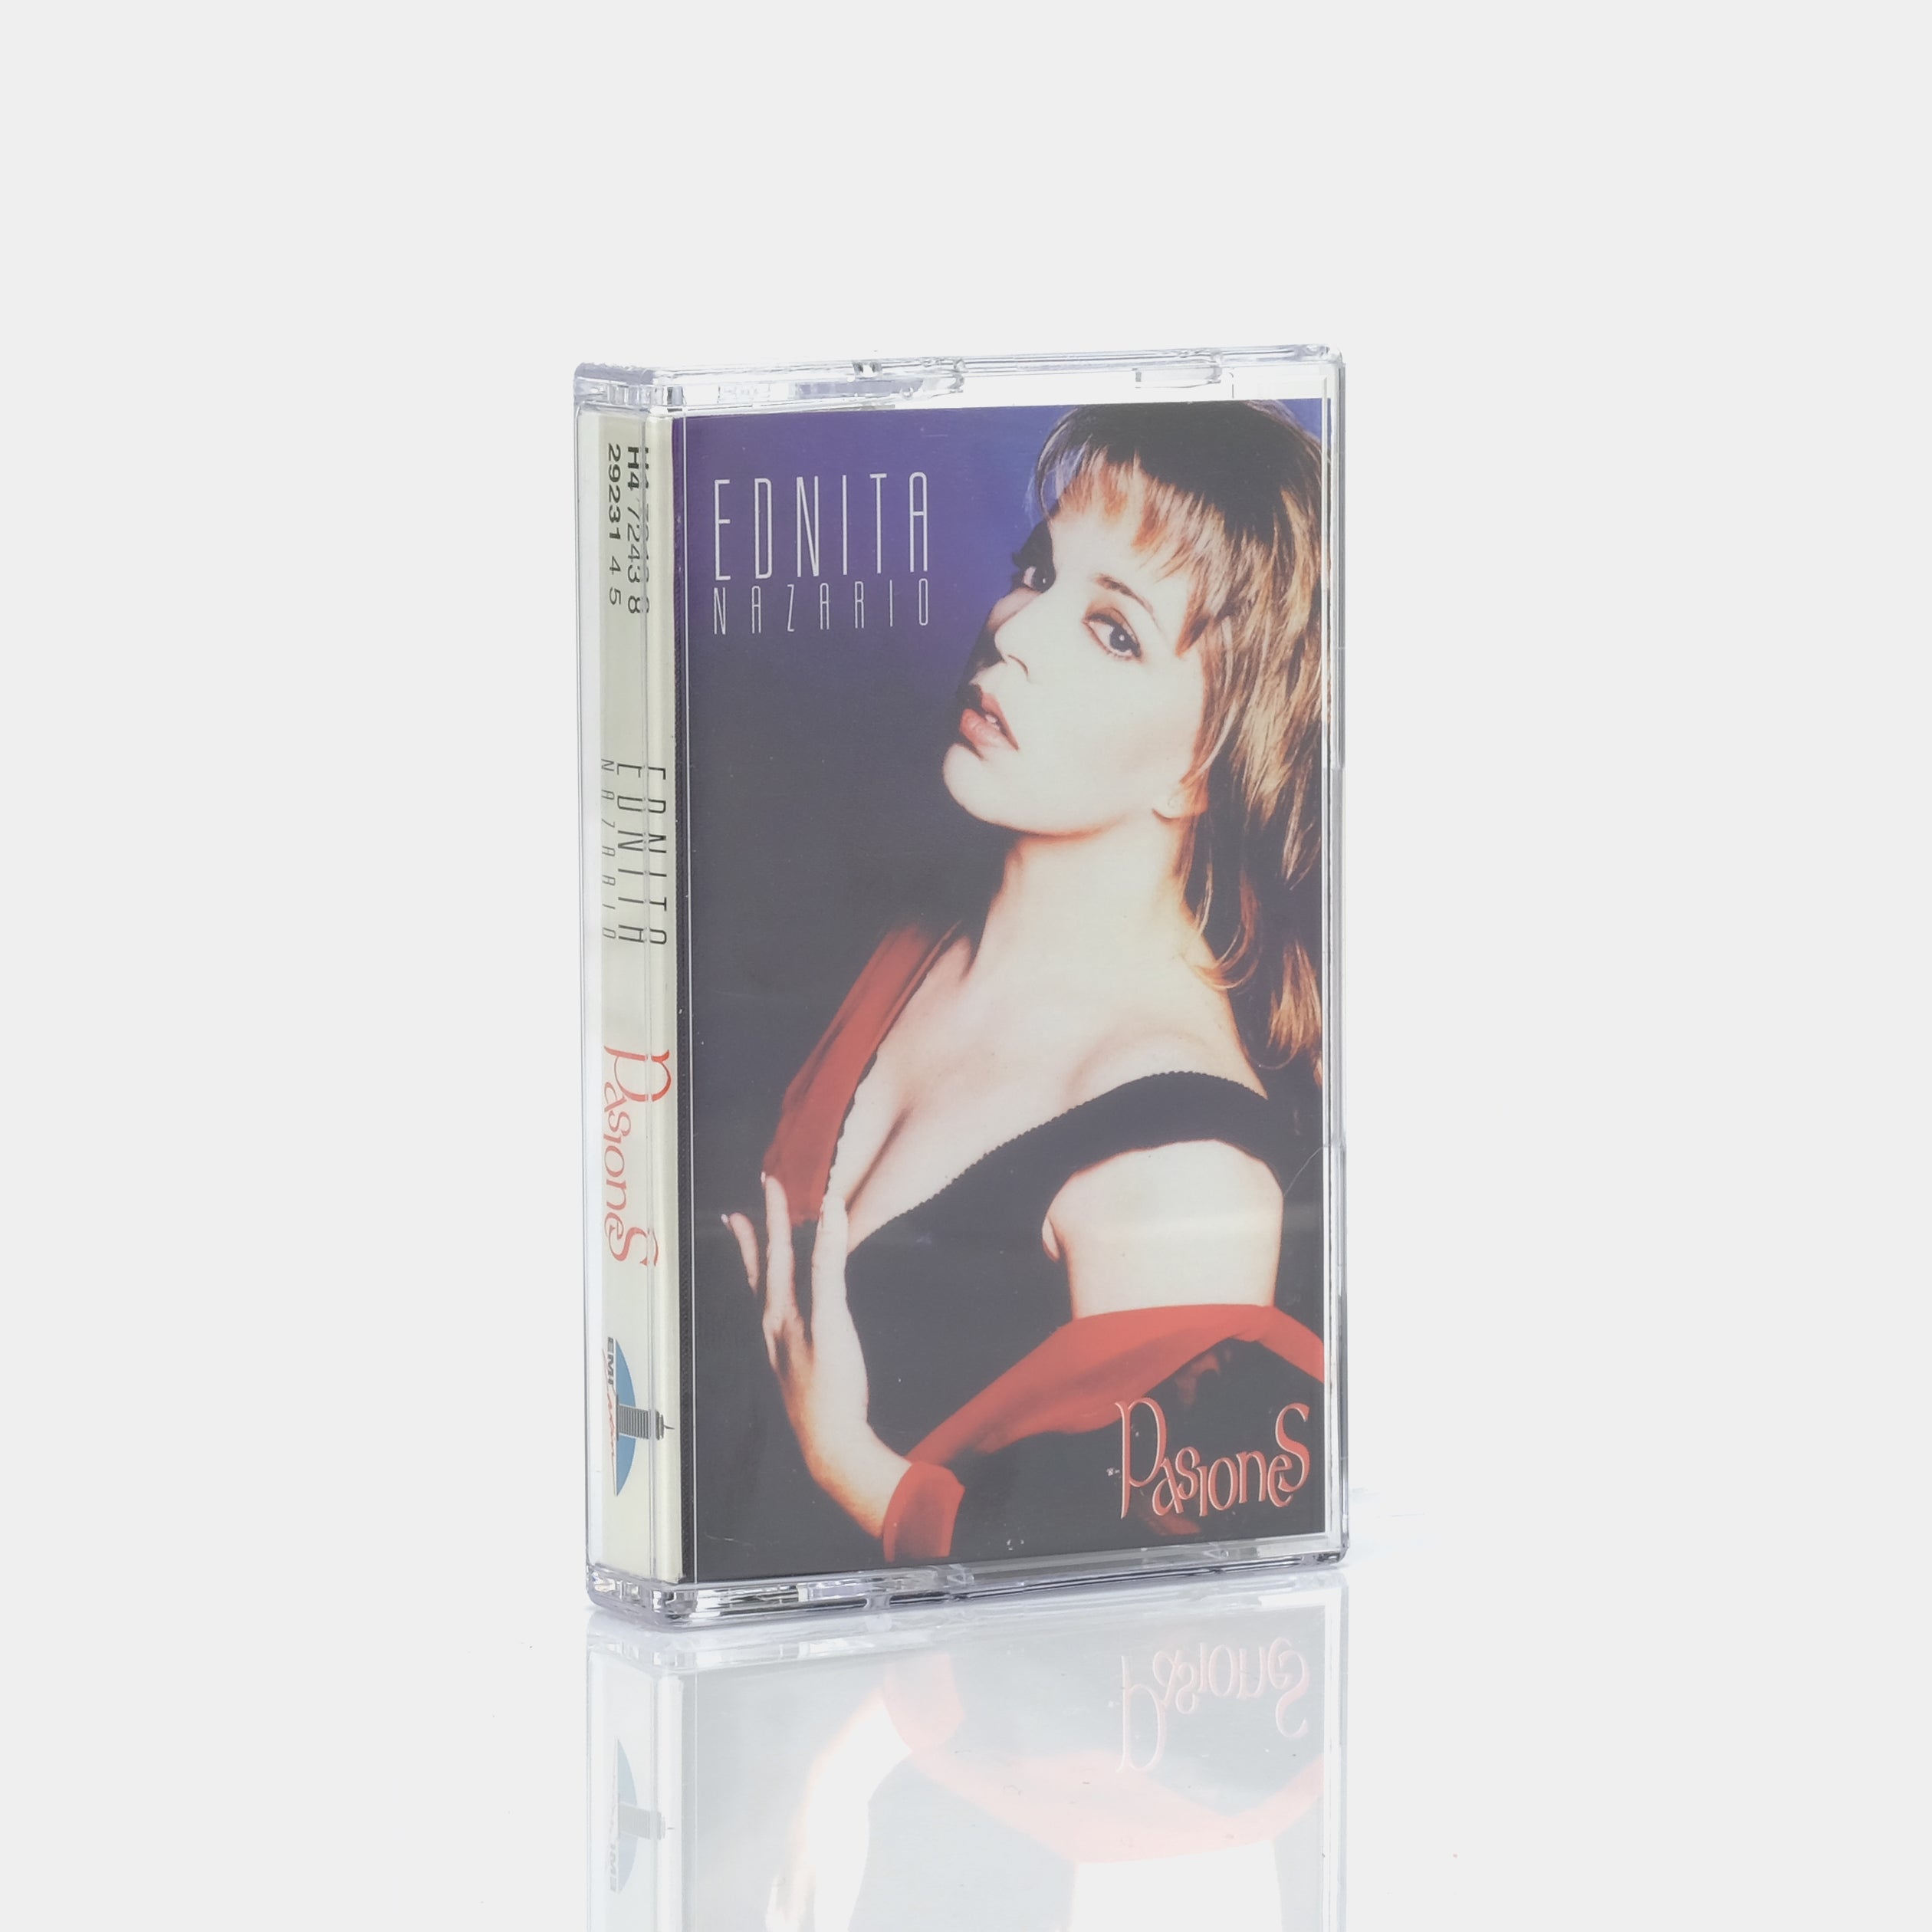 Ednita Nazario - Pasiones Cassette Tape